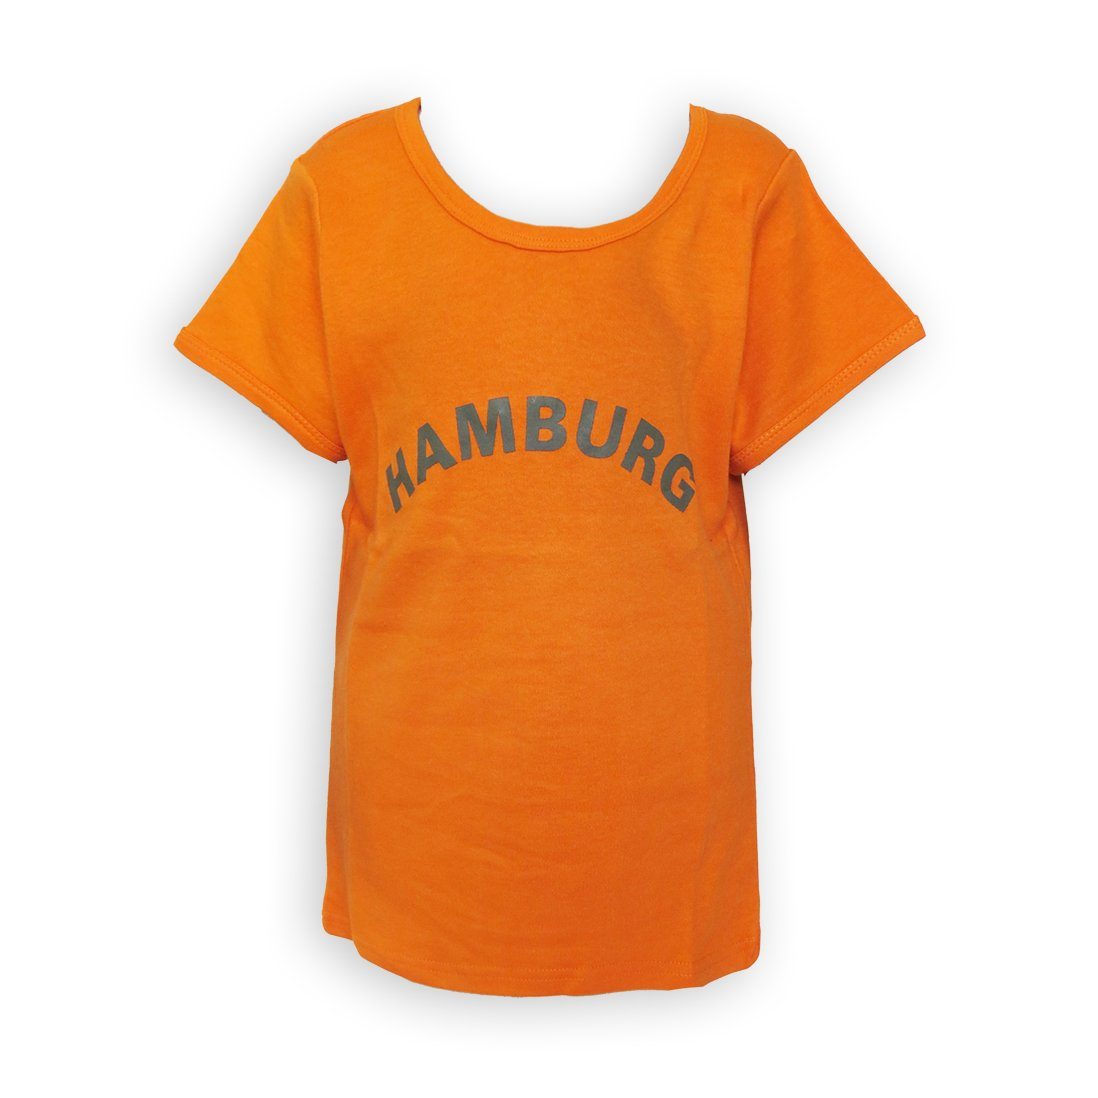 Sonia Hamburg Mädchen Top für Shirt Teens Originelli orange Aufdruck mit T-Shirt